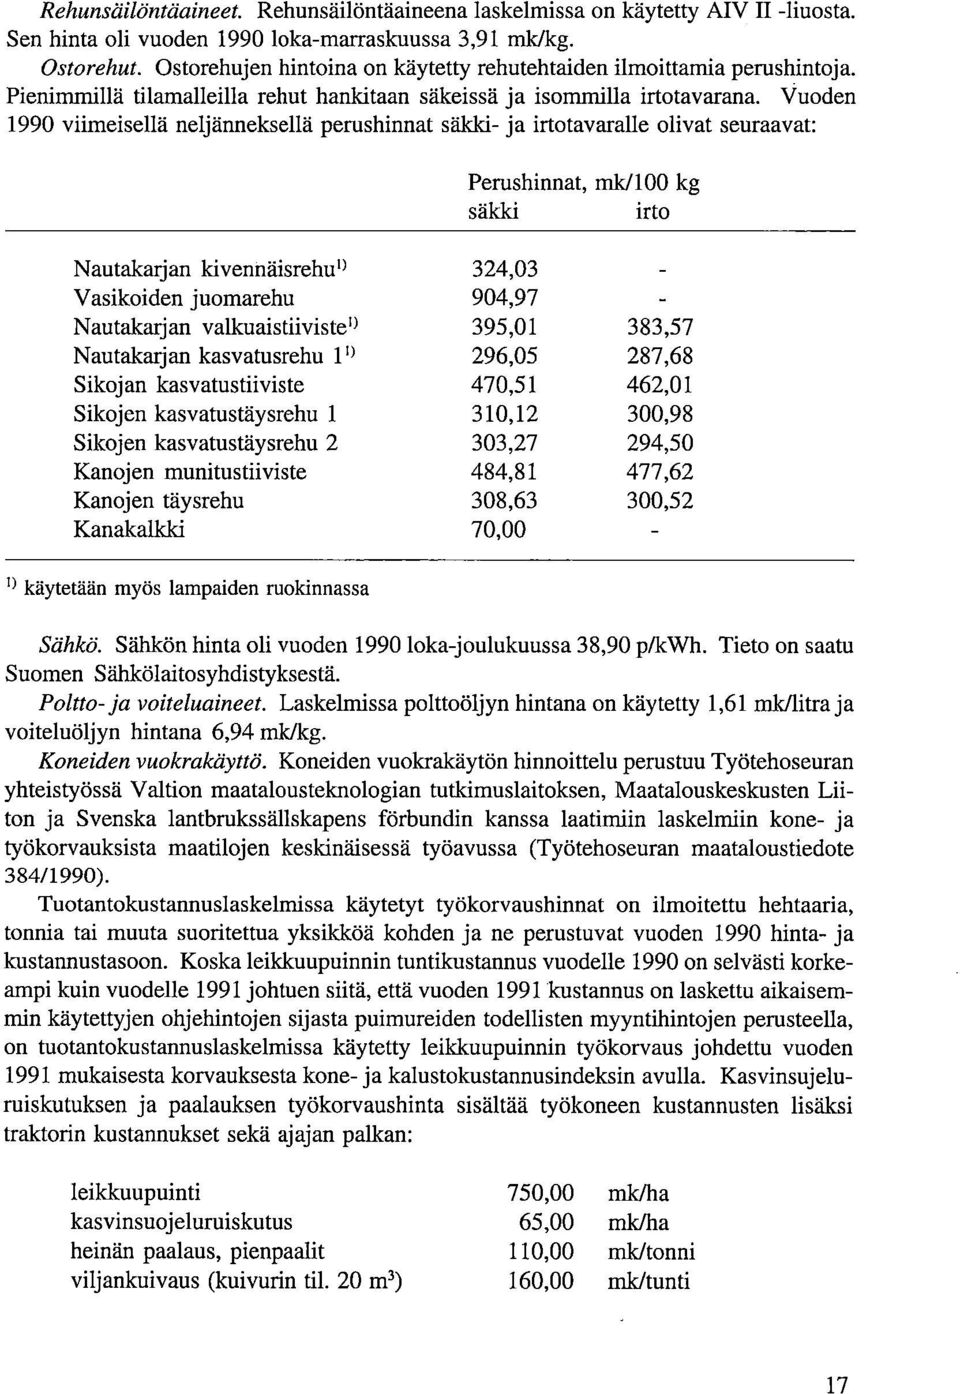 Vuoden 1990 viimeisellä neljänneksellä perushinnat säkki- ja irtotavaralle olivat seuraavat: Perushinnat, mk/100 kg säkki irto Nautakarjan kivennäisrehuo Vasikoiden juomarehu 324,03 904,97